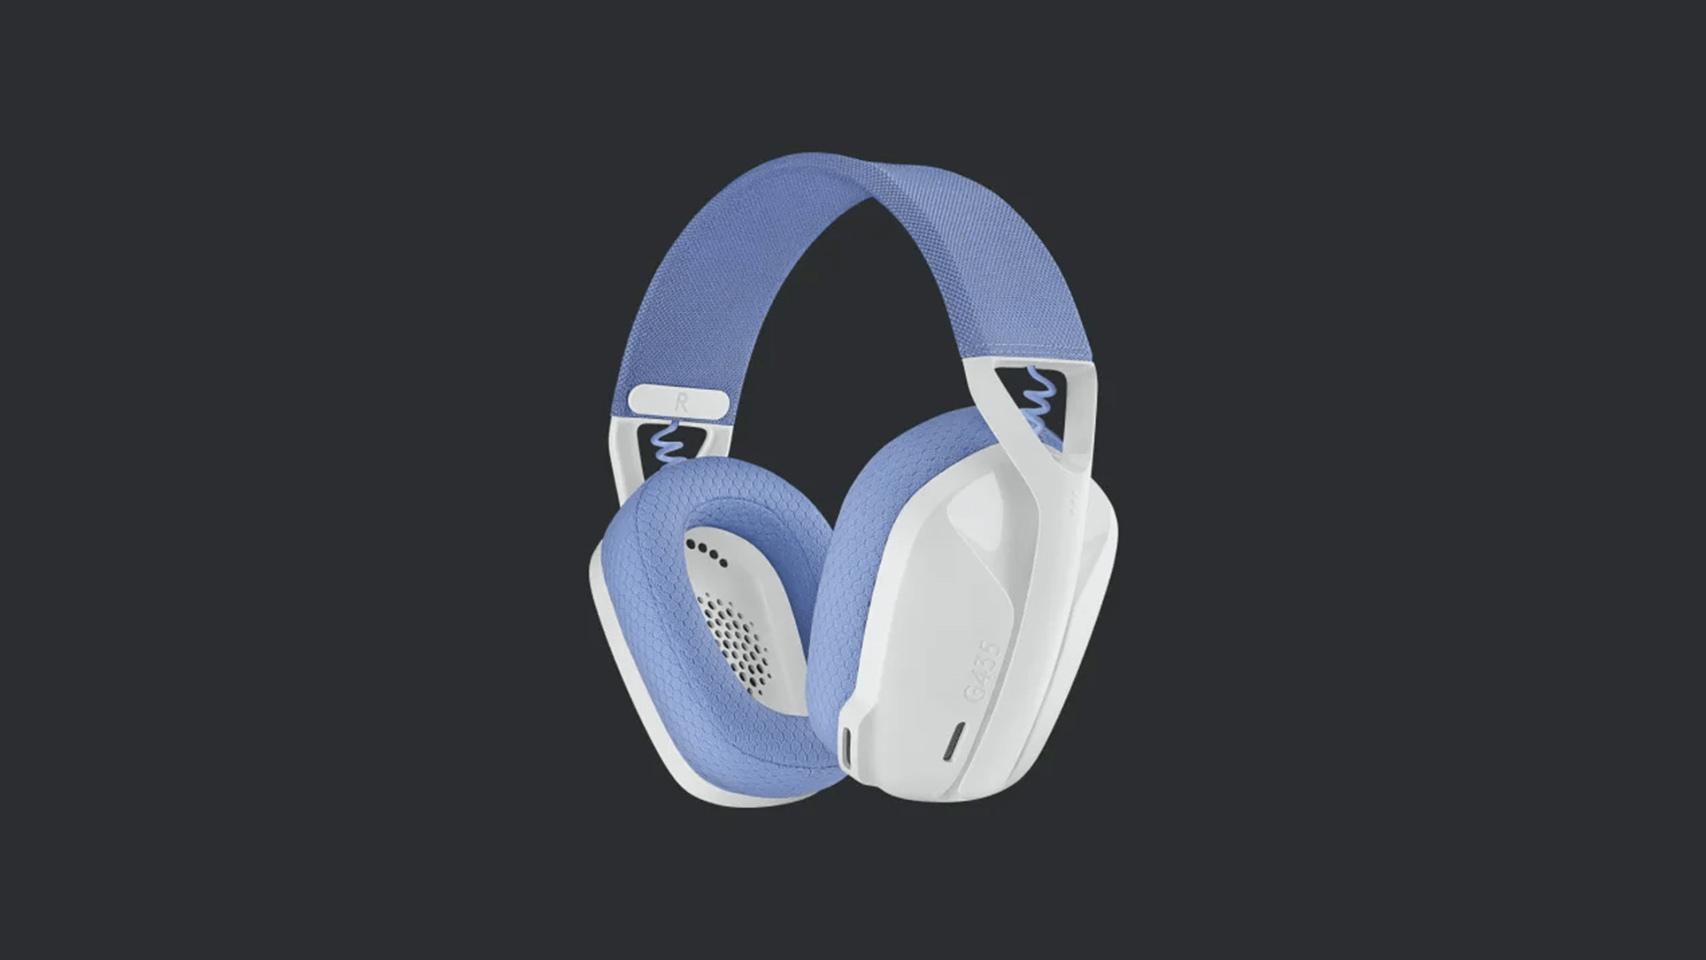 Review: Los auriculares gaming baratos y ultraligeros: probamos los nuevos Logitech  G435